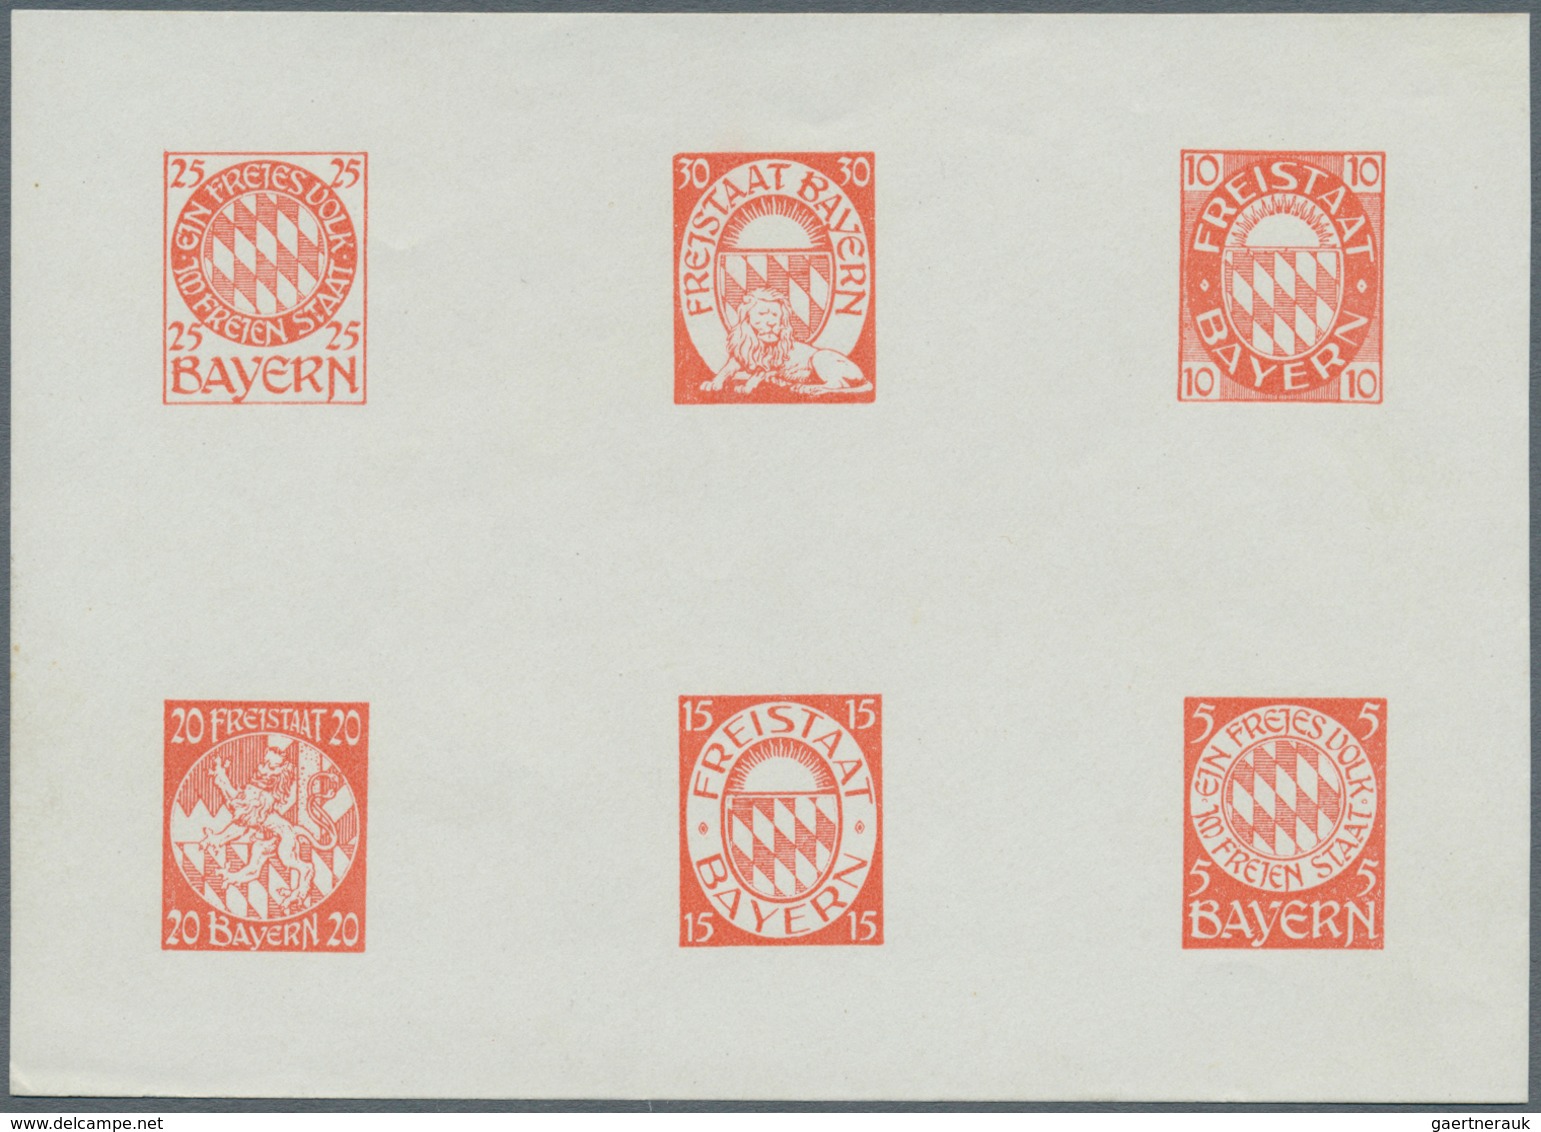 Bayern - Besonderheiten: 1910/1920, 6 Essay-Blöcke mit je 6 Marken in verschiedenen Farben, 1 Block